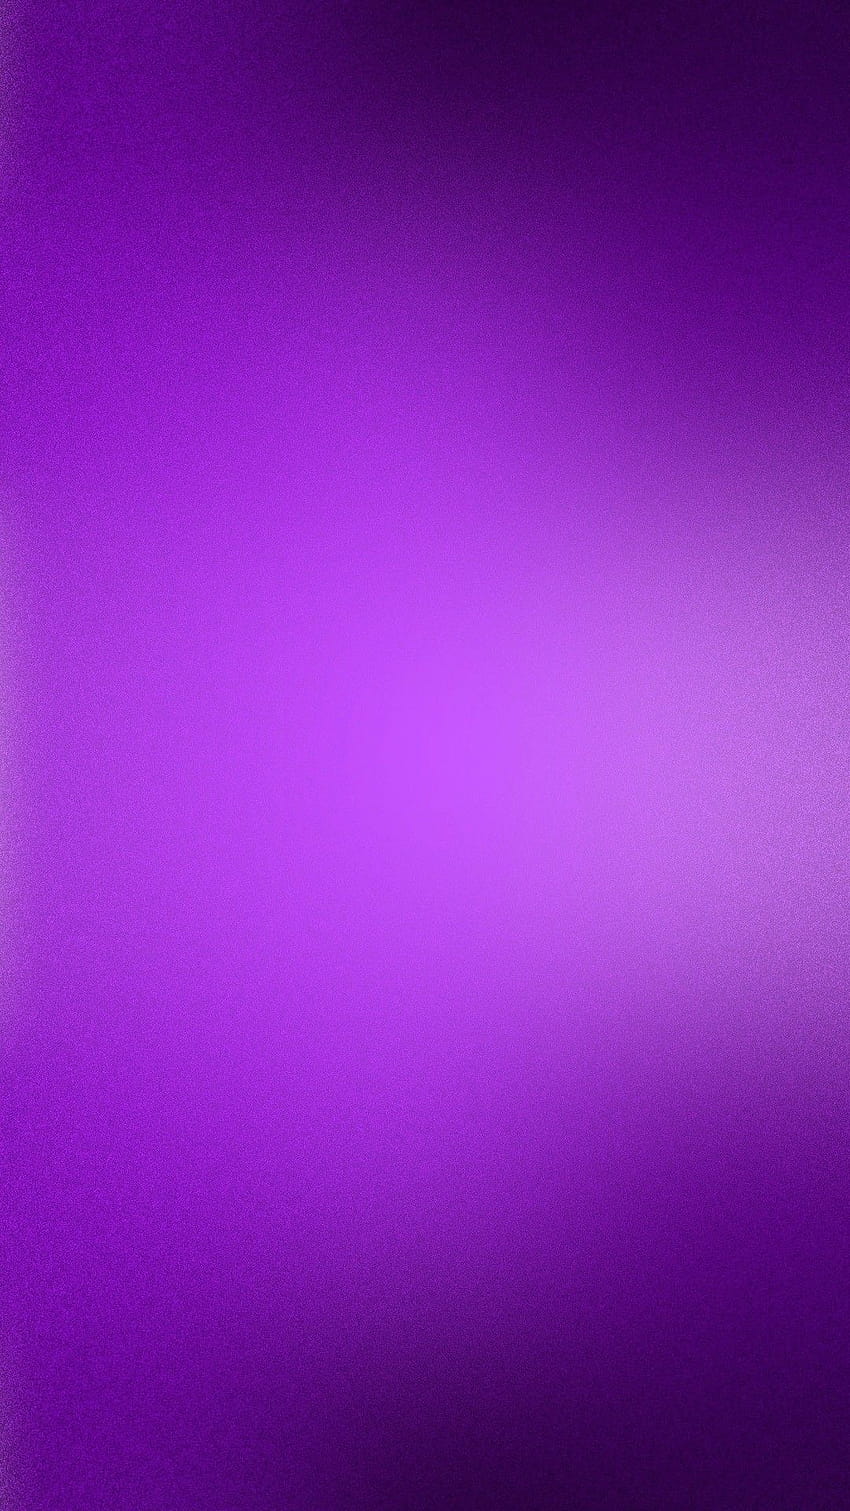 Púrpura, color violeta fondo de pantalla del teléfono